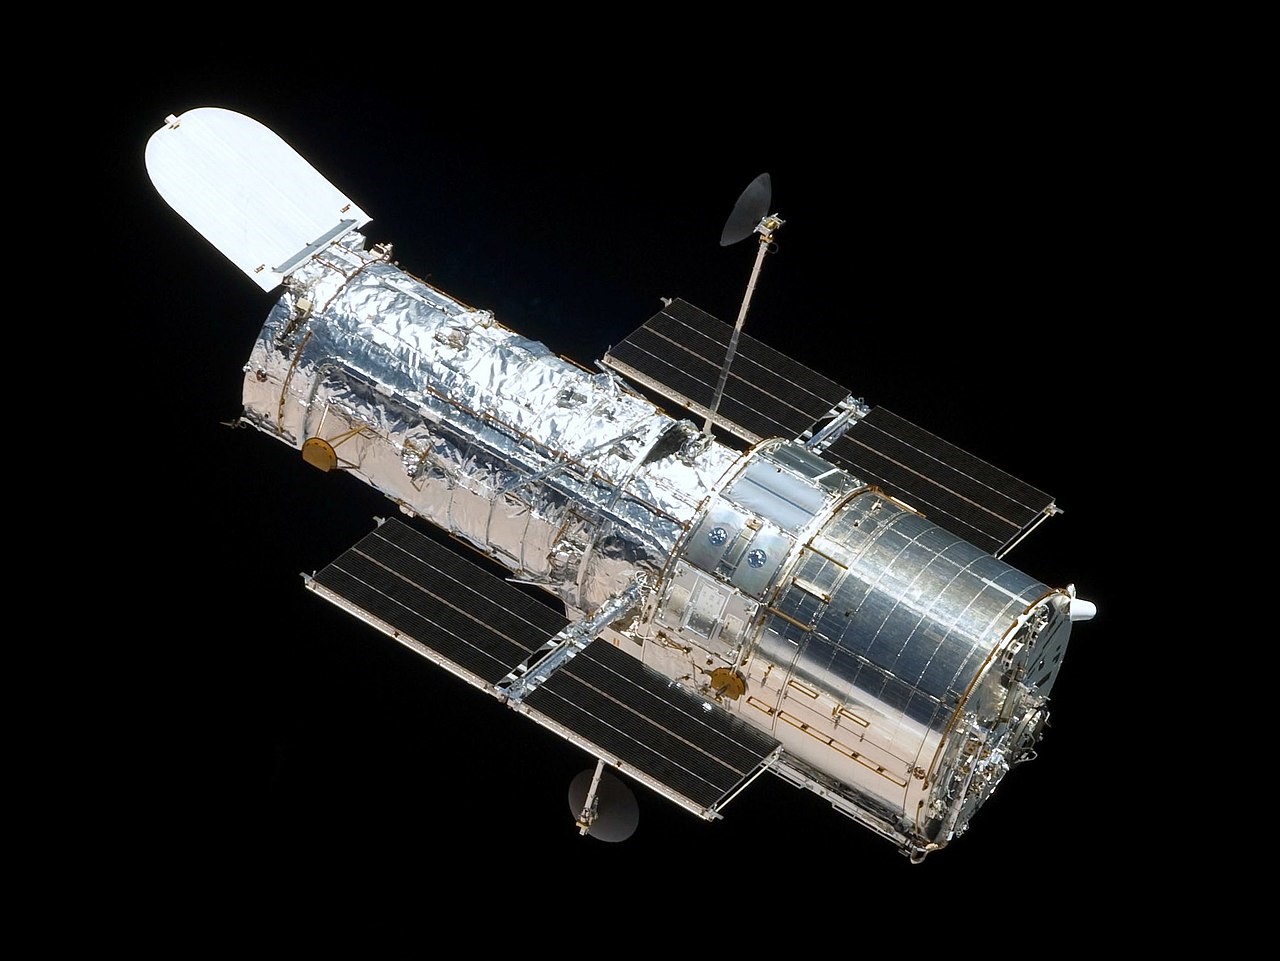 Gli anni si sentono: il telescopio spaziale Hubble ha di nuovo qualche problema Andrea Castelli, Associazione LOfficina, Civico Planetario Ulrico Hoepli, ESA, giroscopio, Hubble, lofficina del planetario, NASA, news, telescopio spaziale